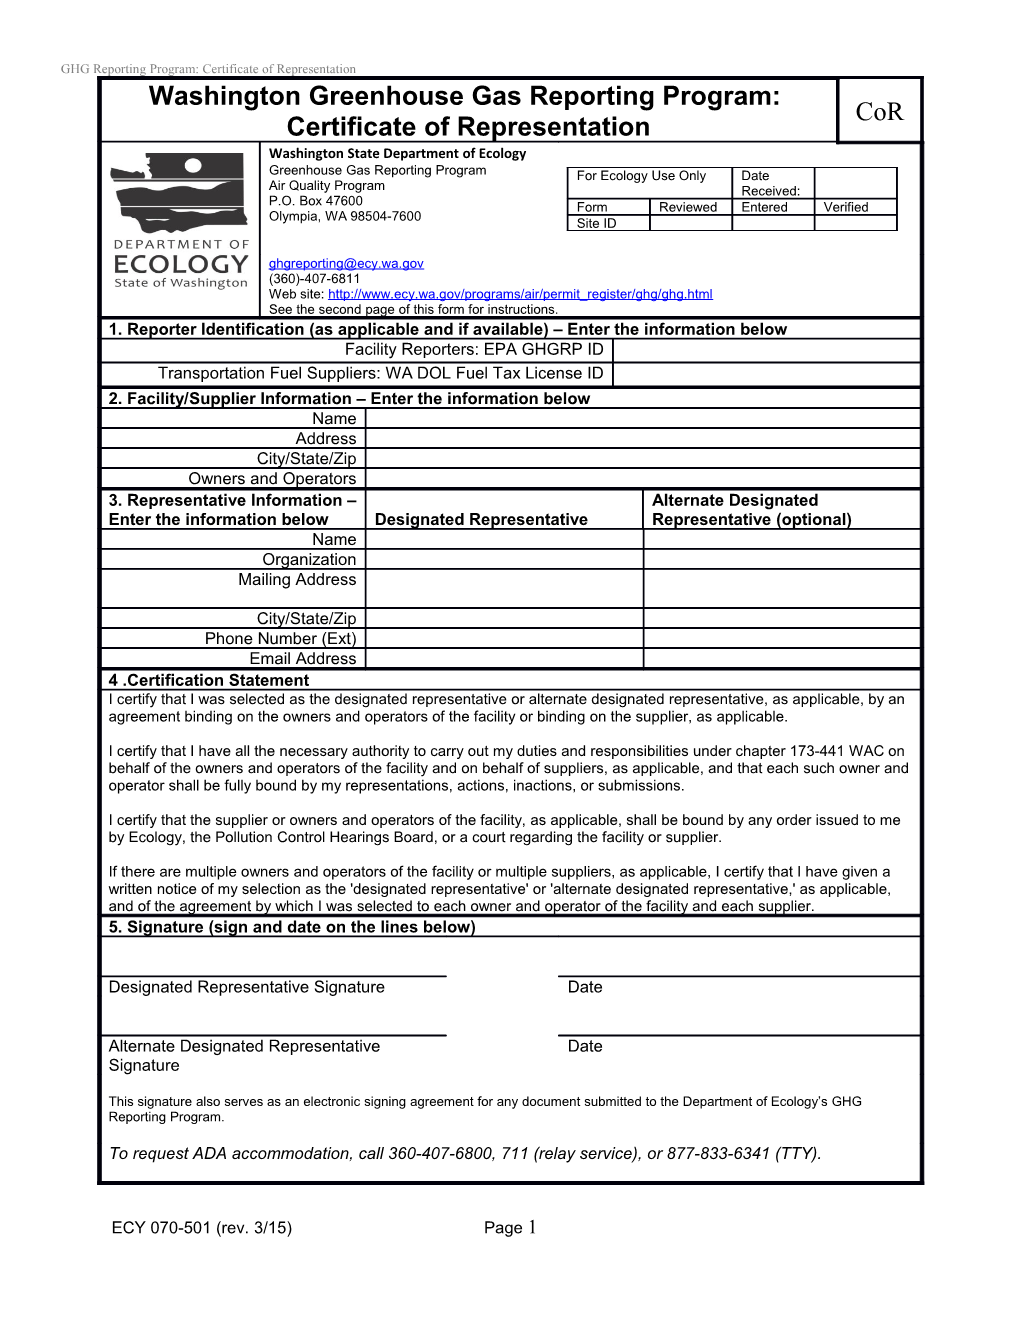 GHG Reporting Program: Certificate of Representation